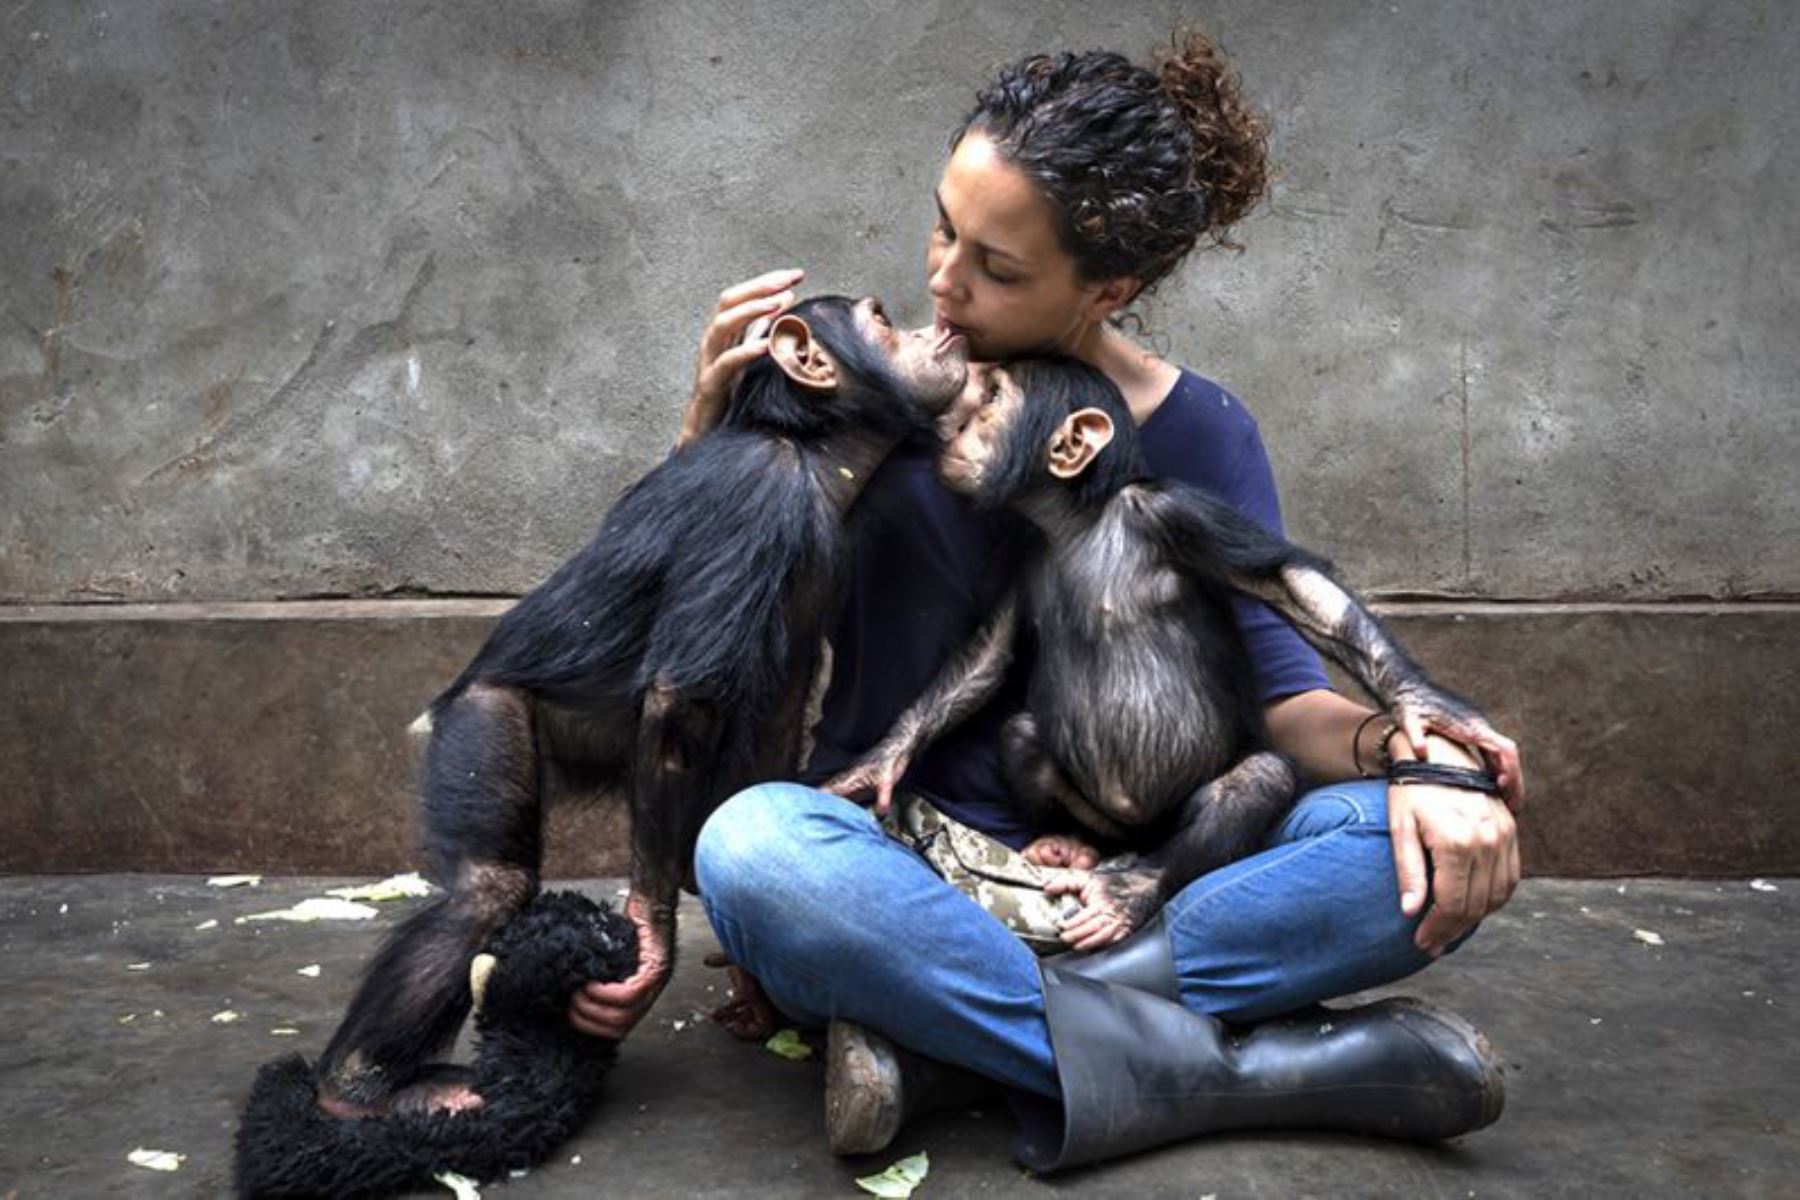 Brent Stirton ganó el premio de Crónica Periodística Fotográfica. Es una secuencia de imágenes que siguen la rehabilitación en un centro de cuidados de chimpancés huérfanos por el comercio de carne de animales silvestres en África. En la foto se ve a la directora del centro presentando un chimpancé recién rescatado a otro que está bajo su cuidado. Foto: BRENT STIRTON/WPY